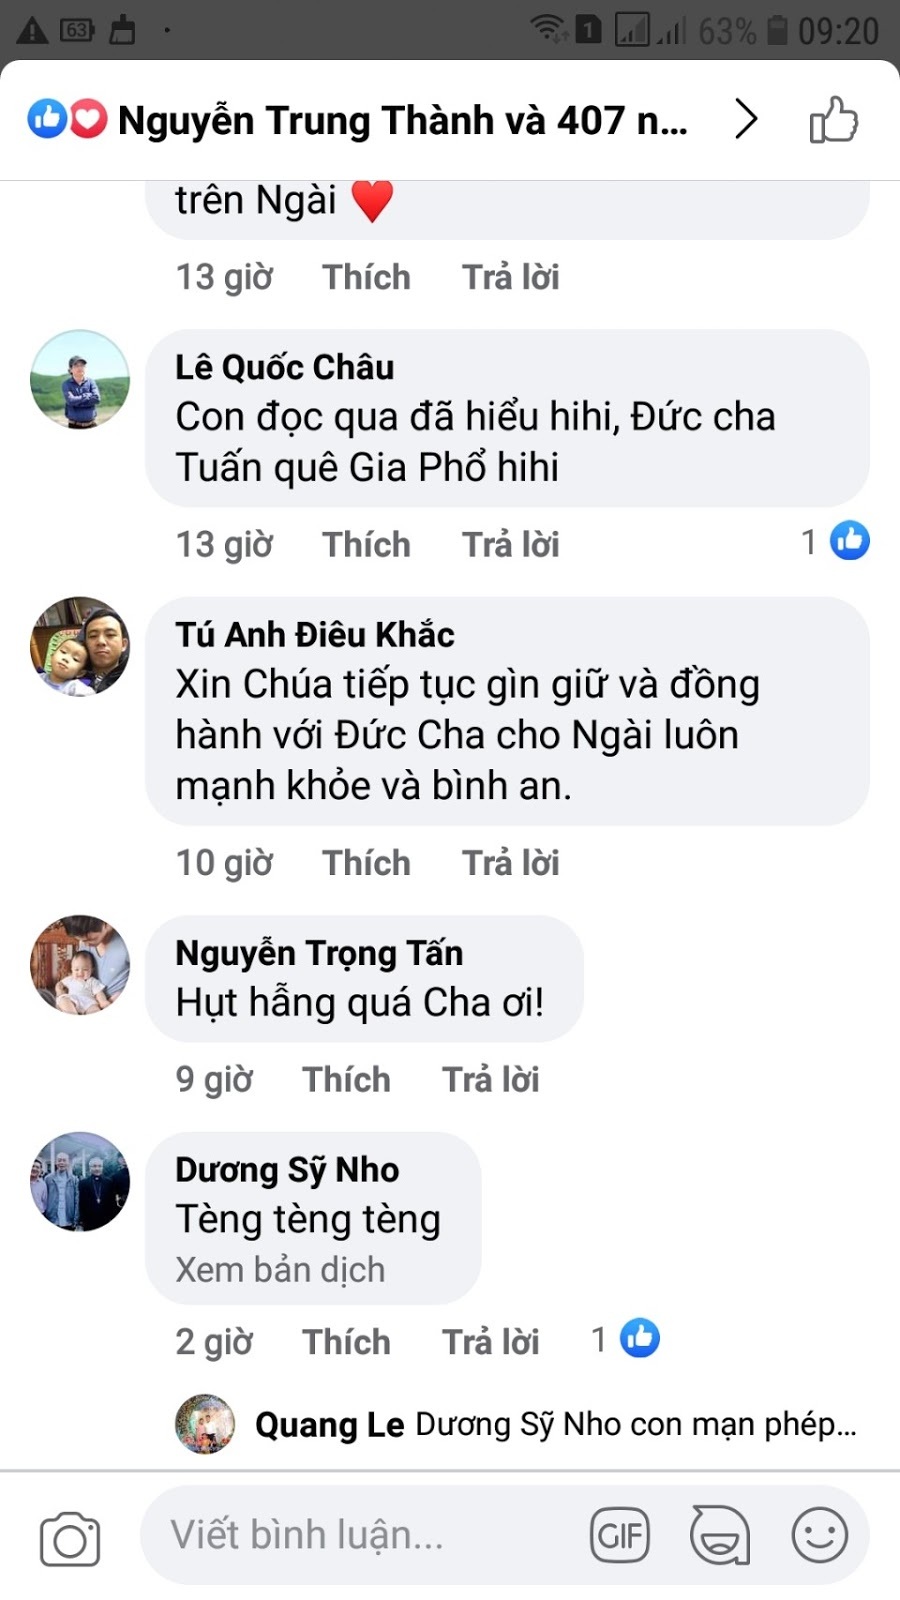 Linh mục đoàn giáo phận Hà Tĩnh chia rẽ vì Giám mục Nguyễn Thái Hợp?!